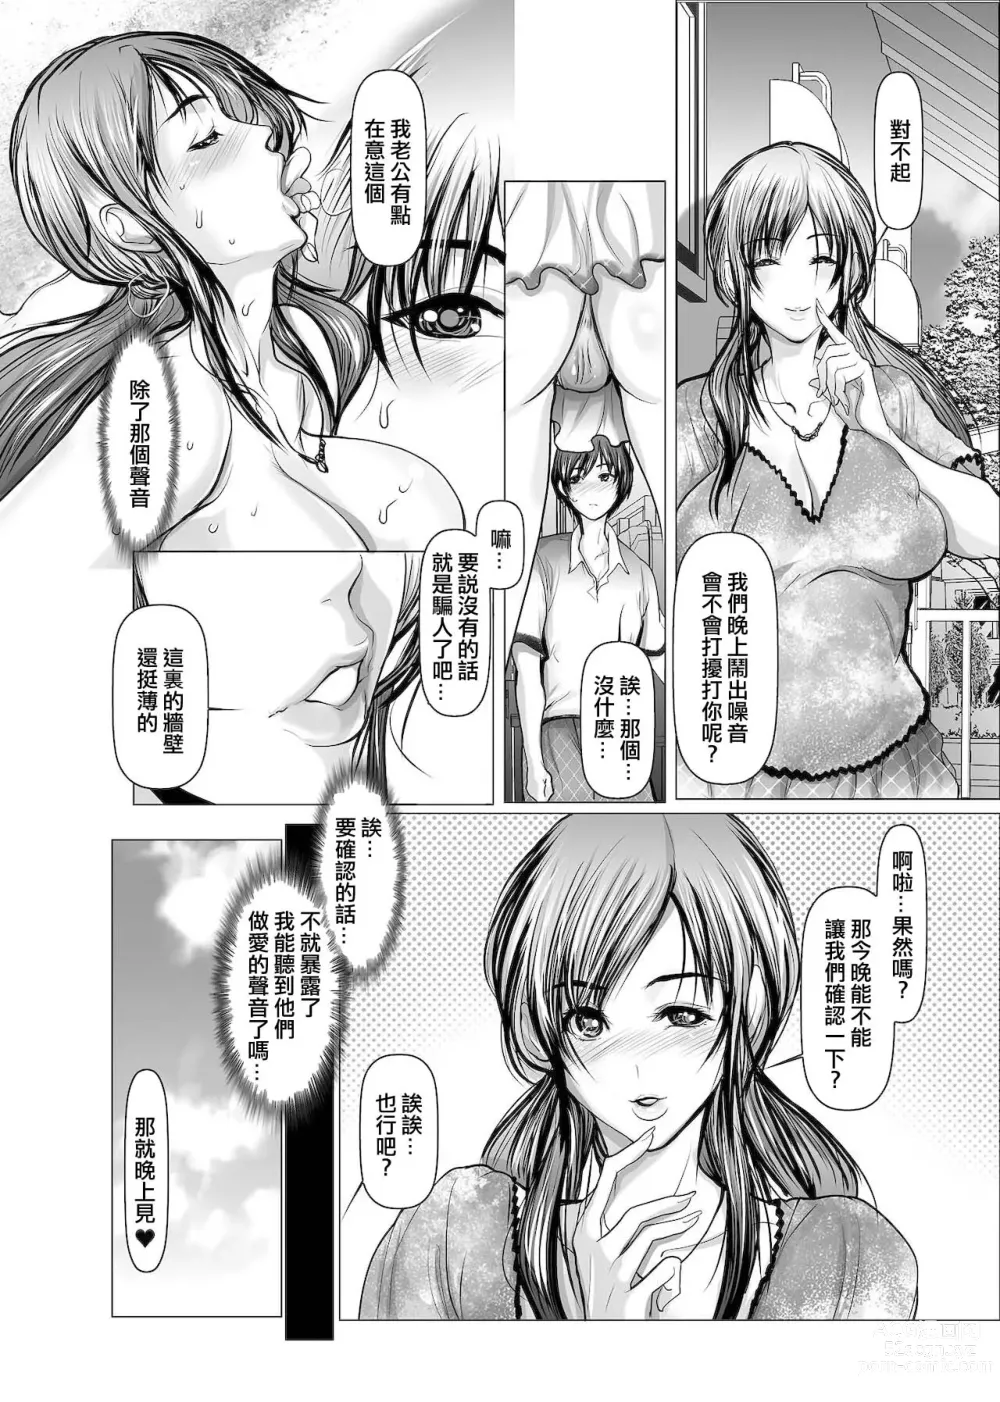 Page 7 of manga Kabe no Mukou-gawa